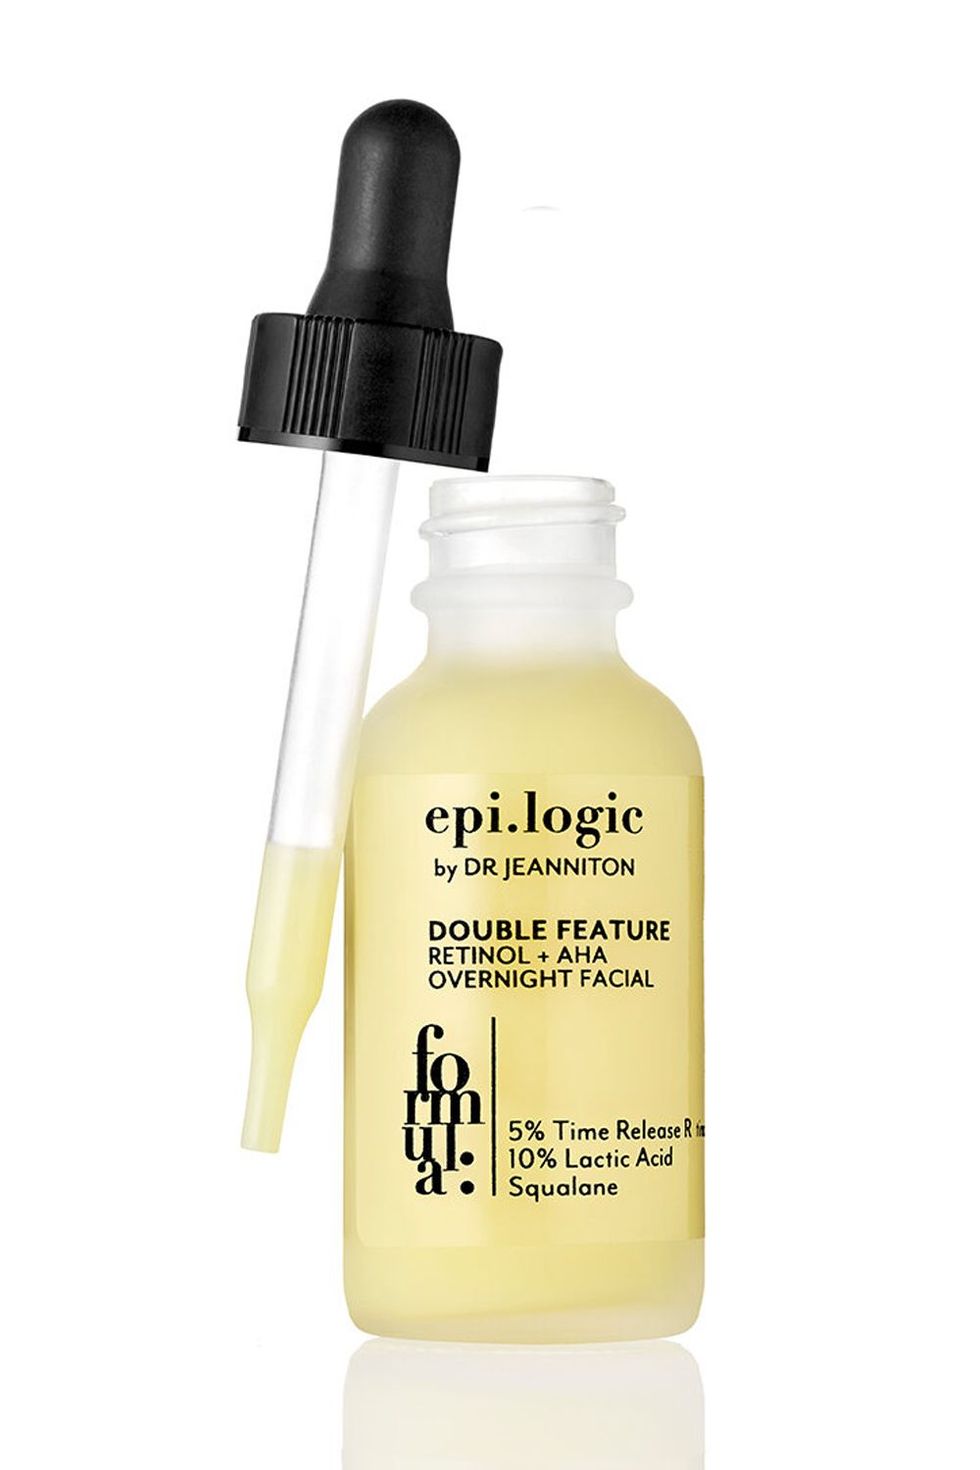 Epi.logic Skincare Double Feature Retinol + AHA Overnight Facial